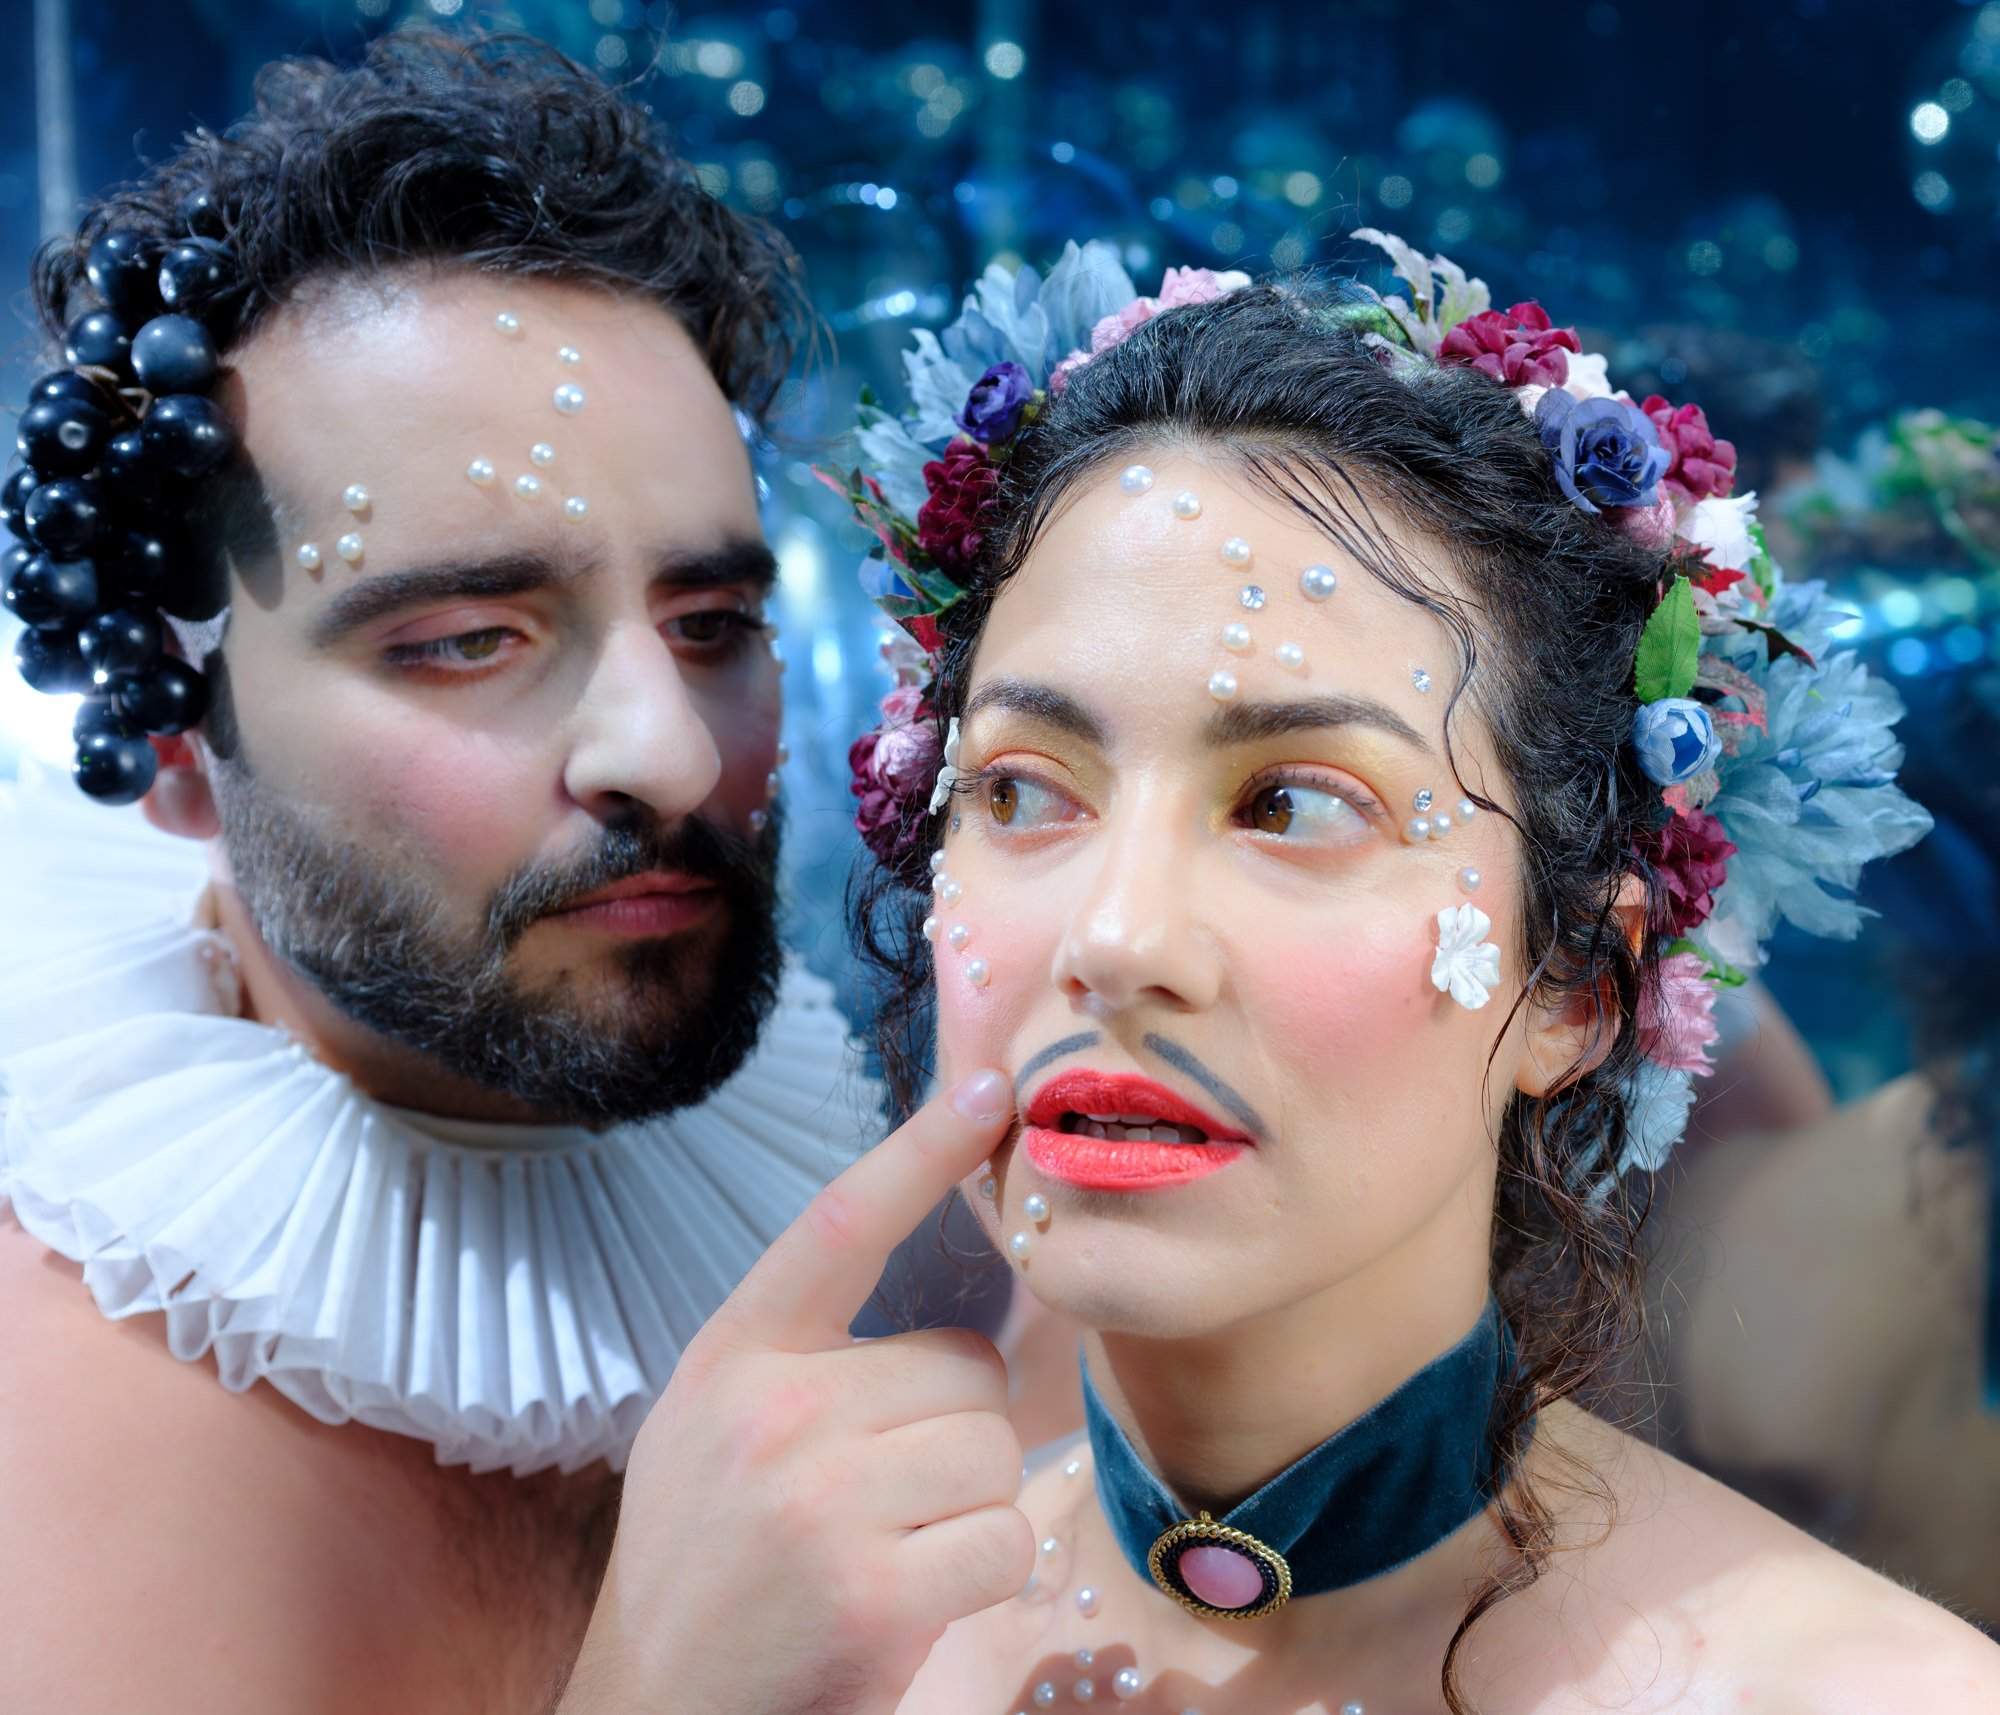 Δωδέκατη Νύχτα ή ό,τι Επιθυμειτε: Ο Γιάννης Κακλέας στο Θέατρο Τέχνης με μια "ονειρική" σαιξπηρική κωμωδία